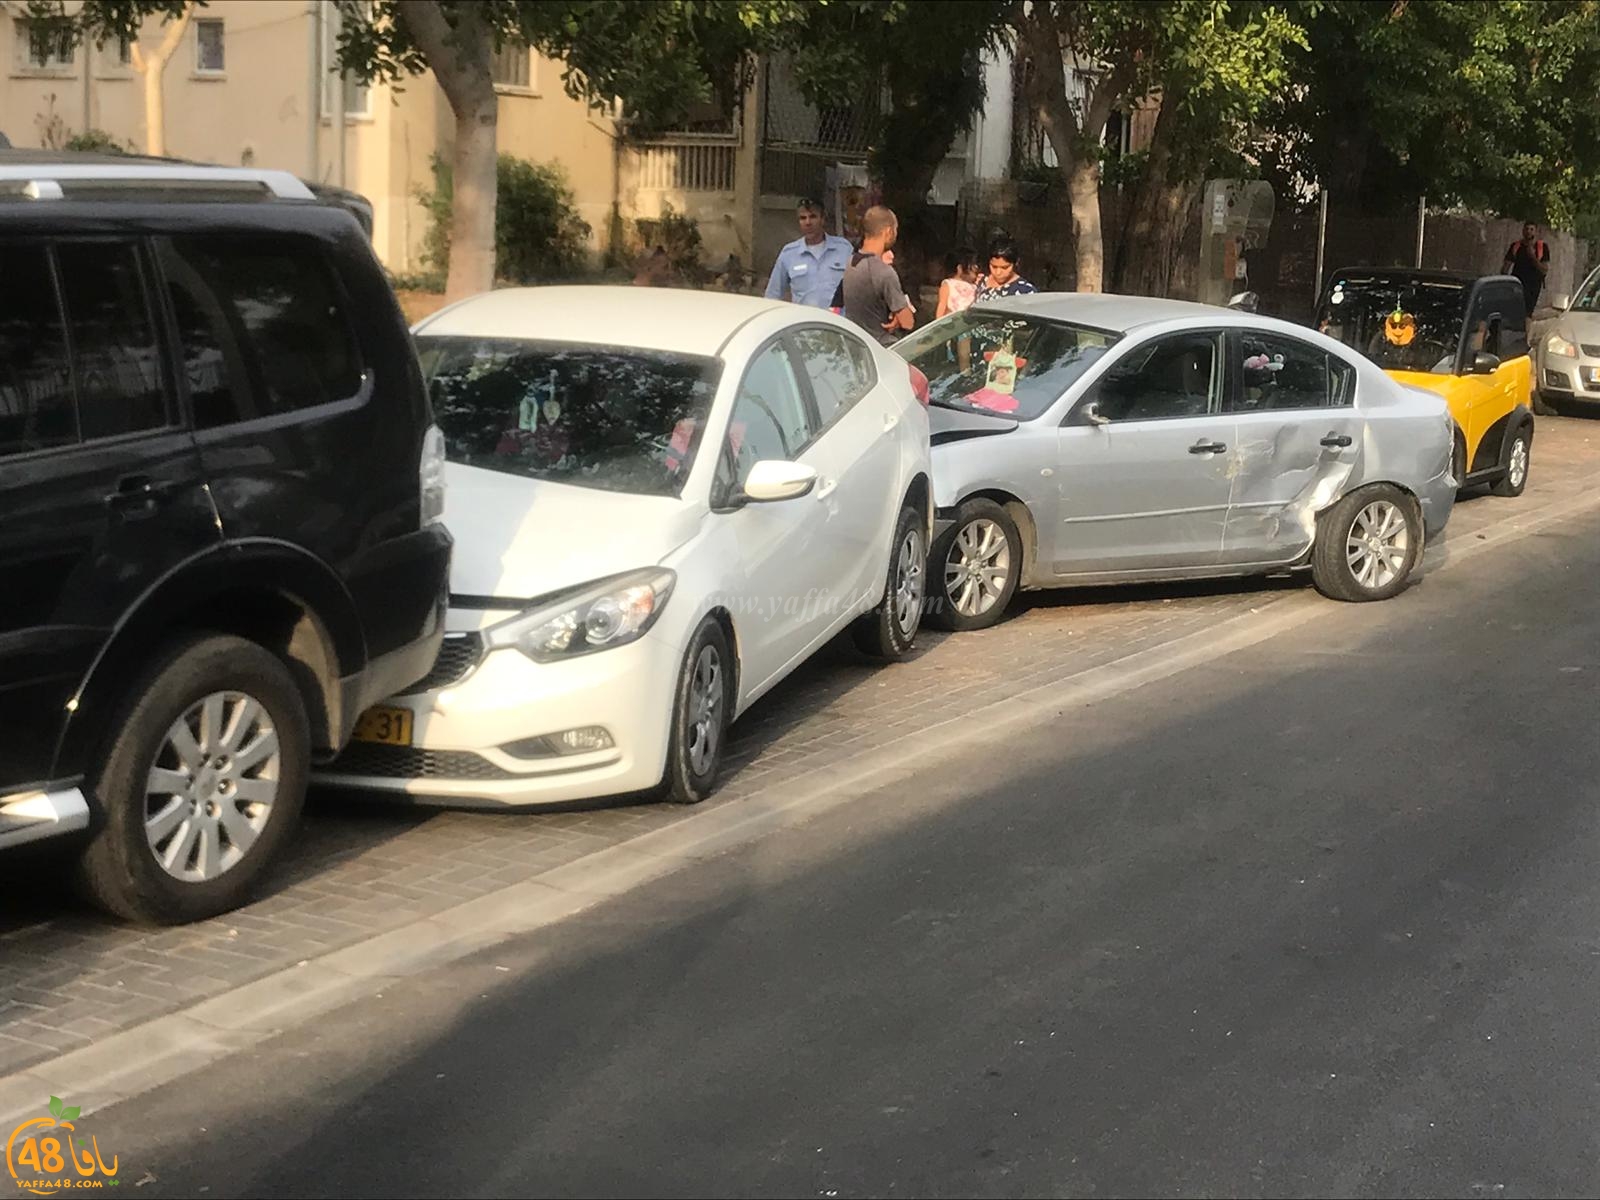 بالصور: شاحنة تصطدم بعدة مركبات في مدينة يافا دون اصابات